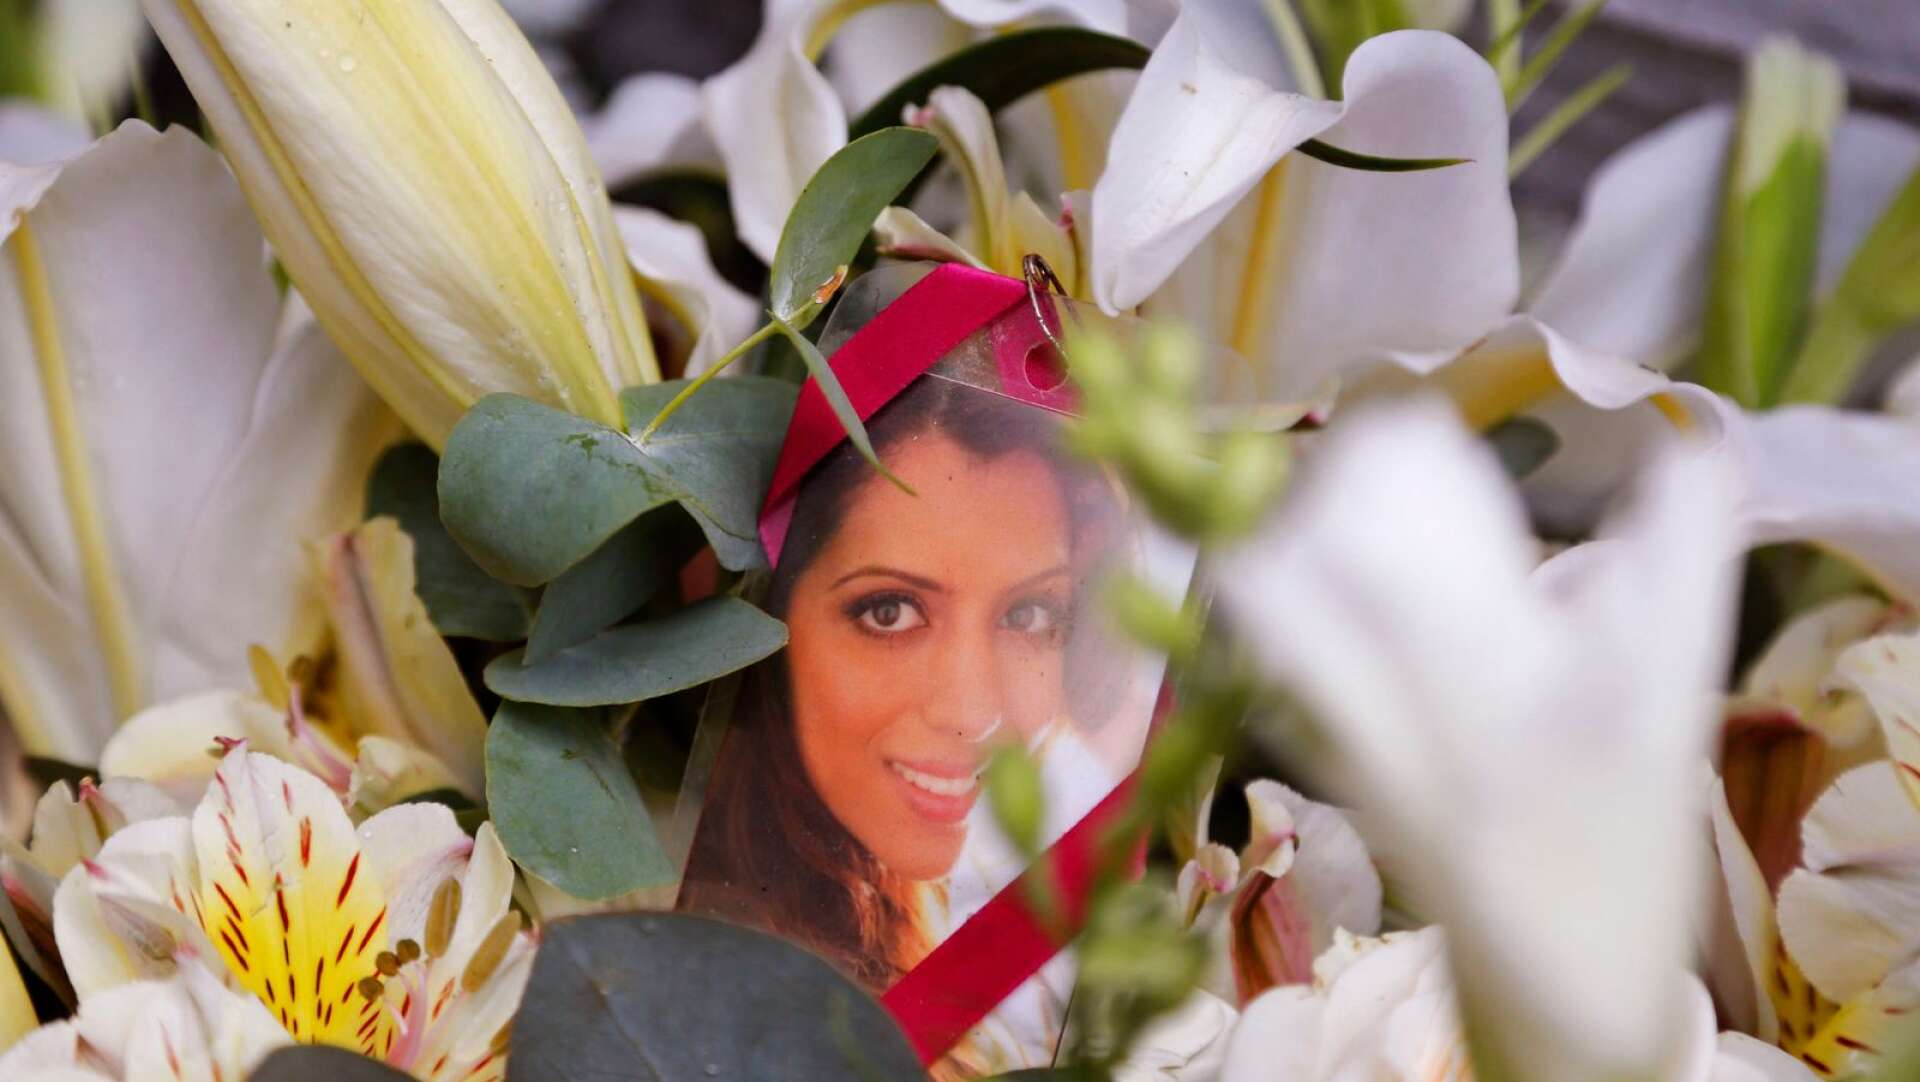 Mördad. 28-åriga Anni Hindocha, född och uppvuxen i Mariestad, var på bröllopsresa till Kapstaden med Shrien Dewani i november 2010 när hon sköts till döds.